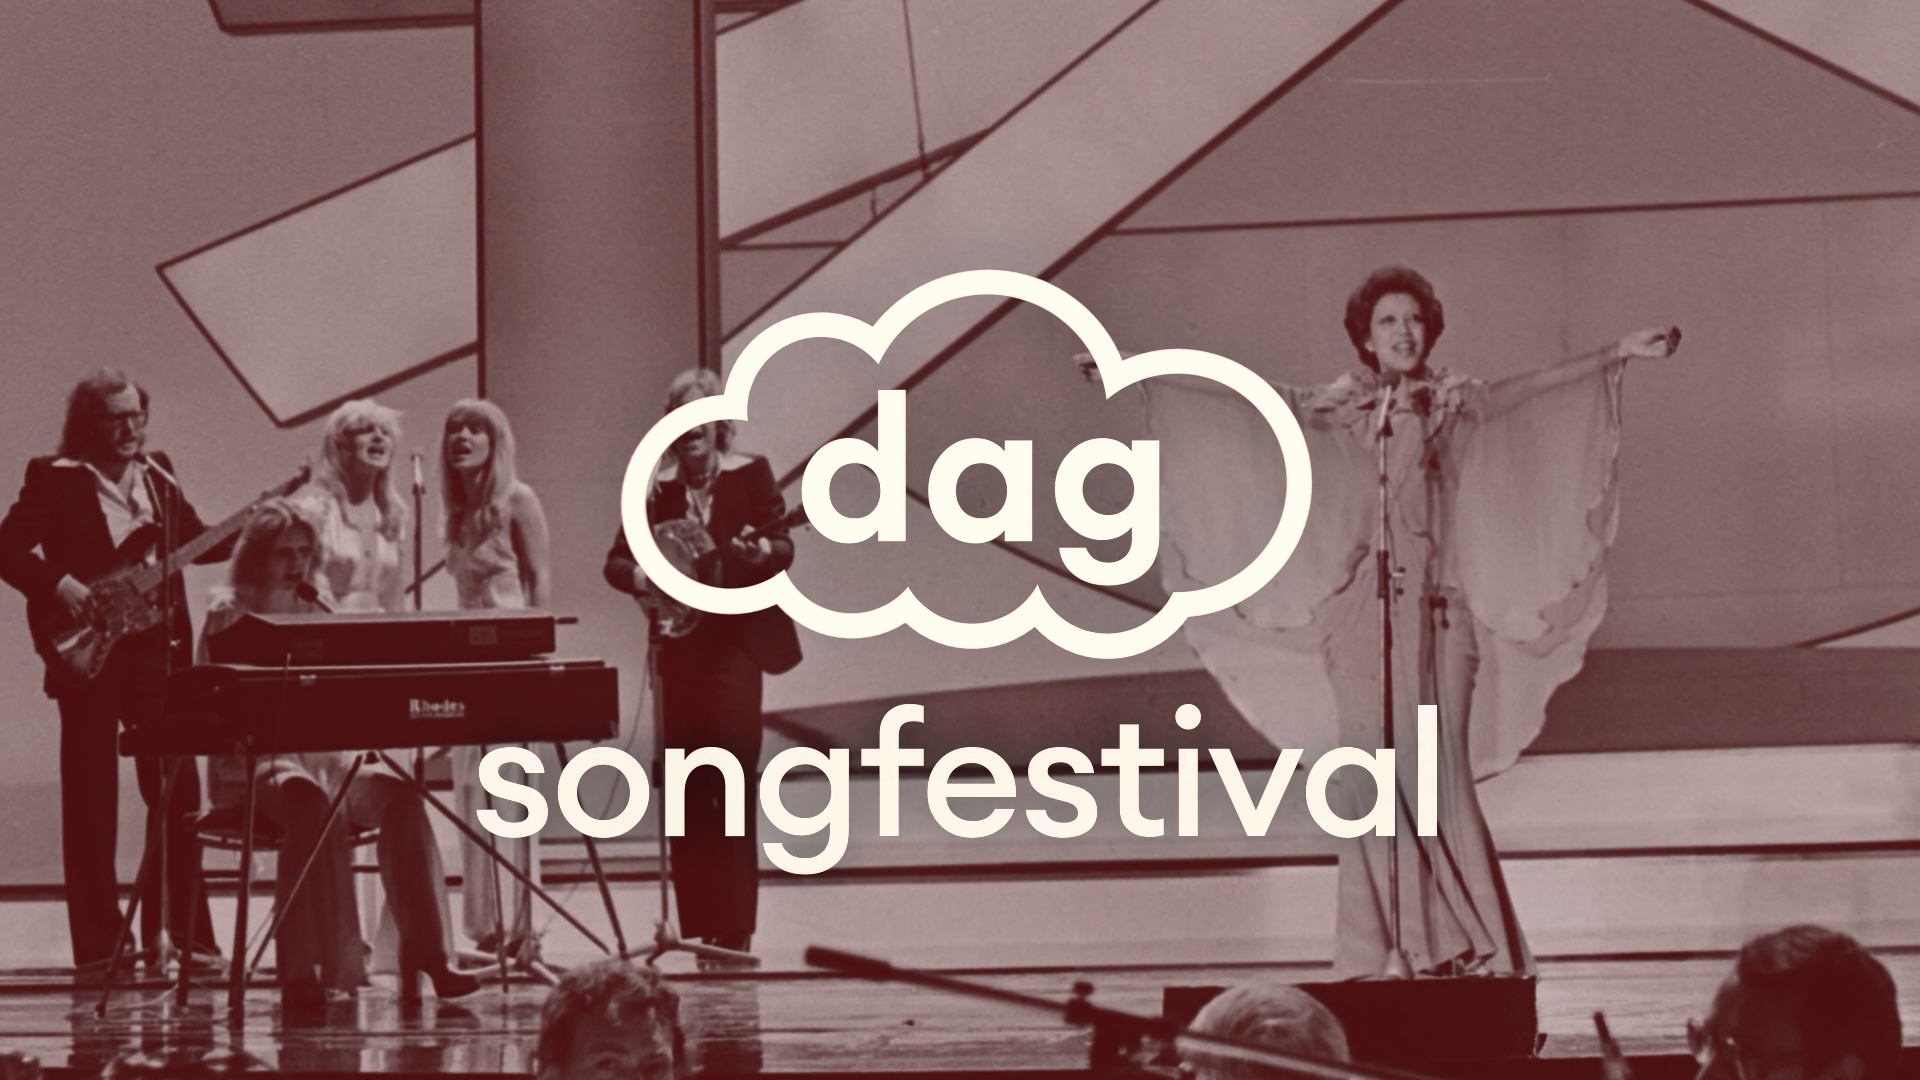 Deze week bij dagtv: Songfestival huiskamer activiteiten